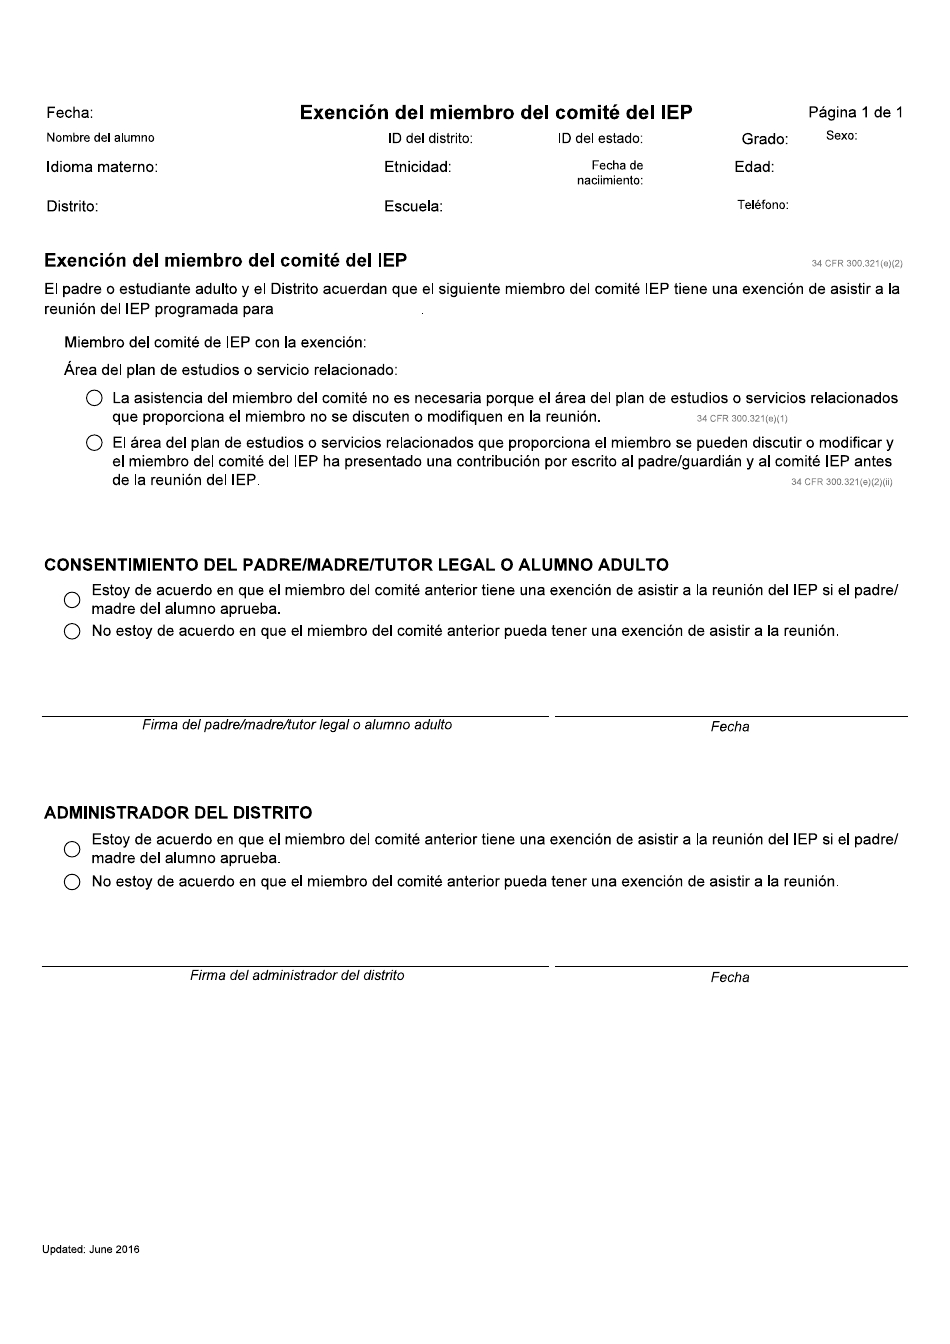 Exencion Del Miembro Del Comite Del Iep - Idaho (Spanish), Page 1